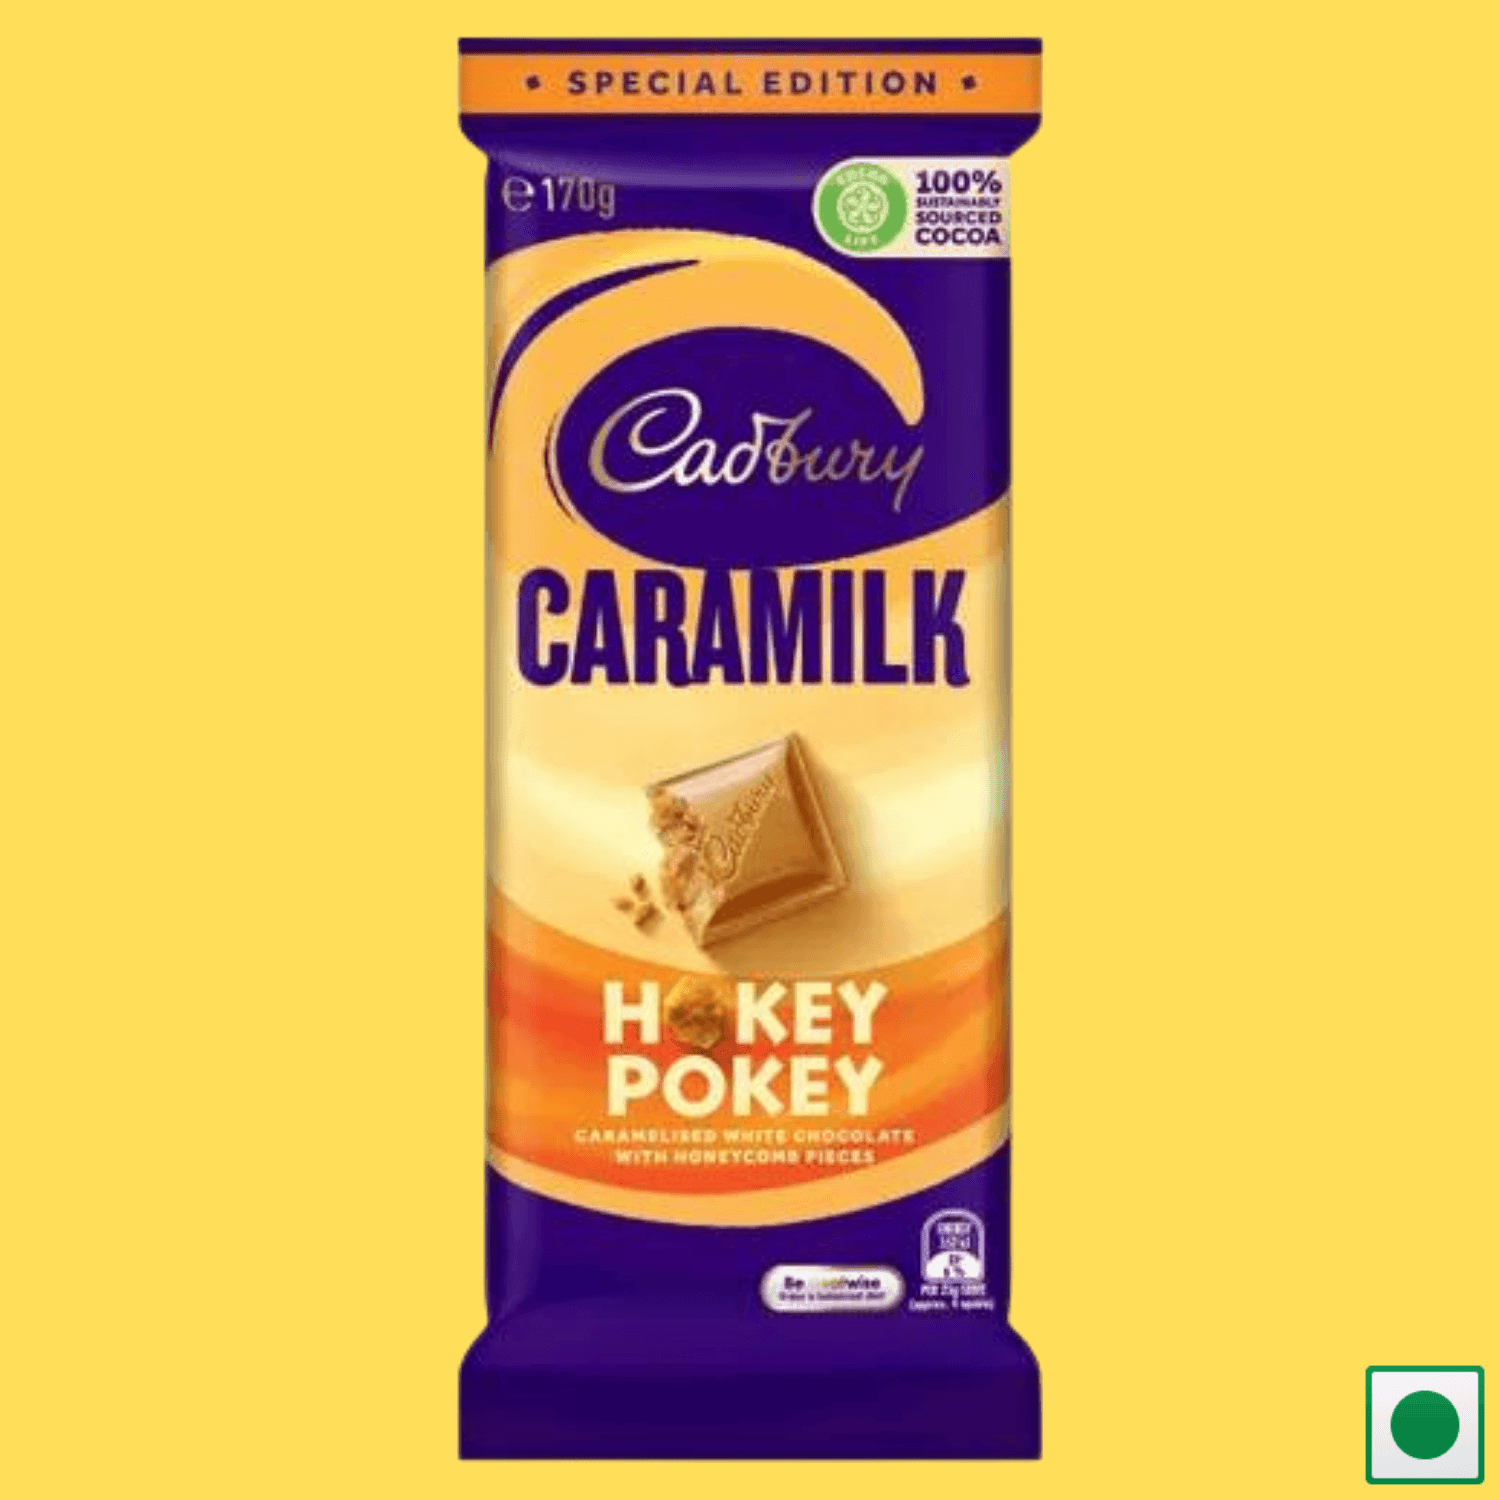 Cadbury Caramilk Hokey Pokey Special Edition, 170g (Imported) - Super 7 Mart